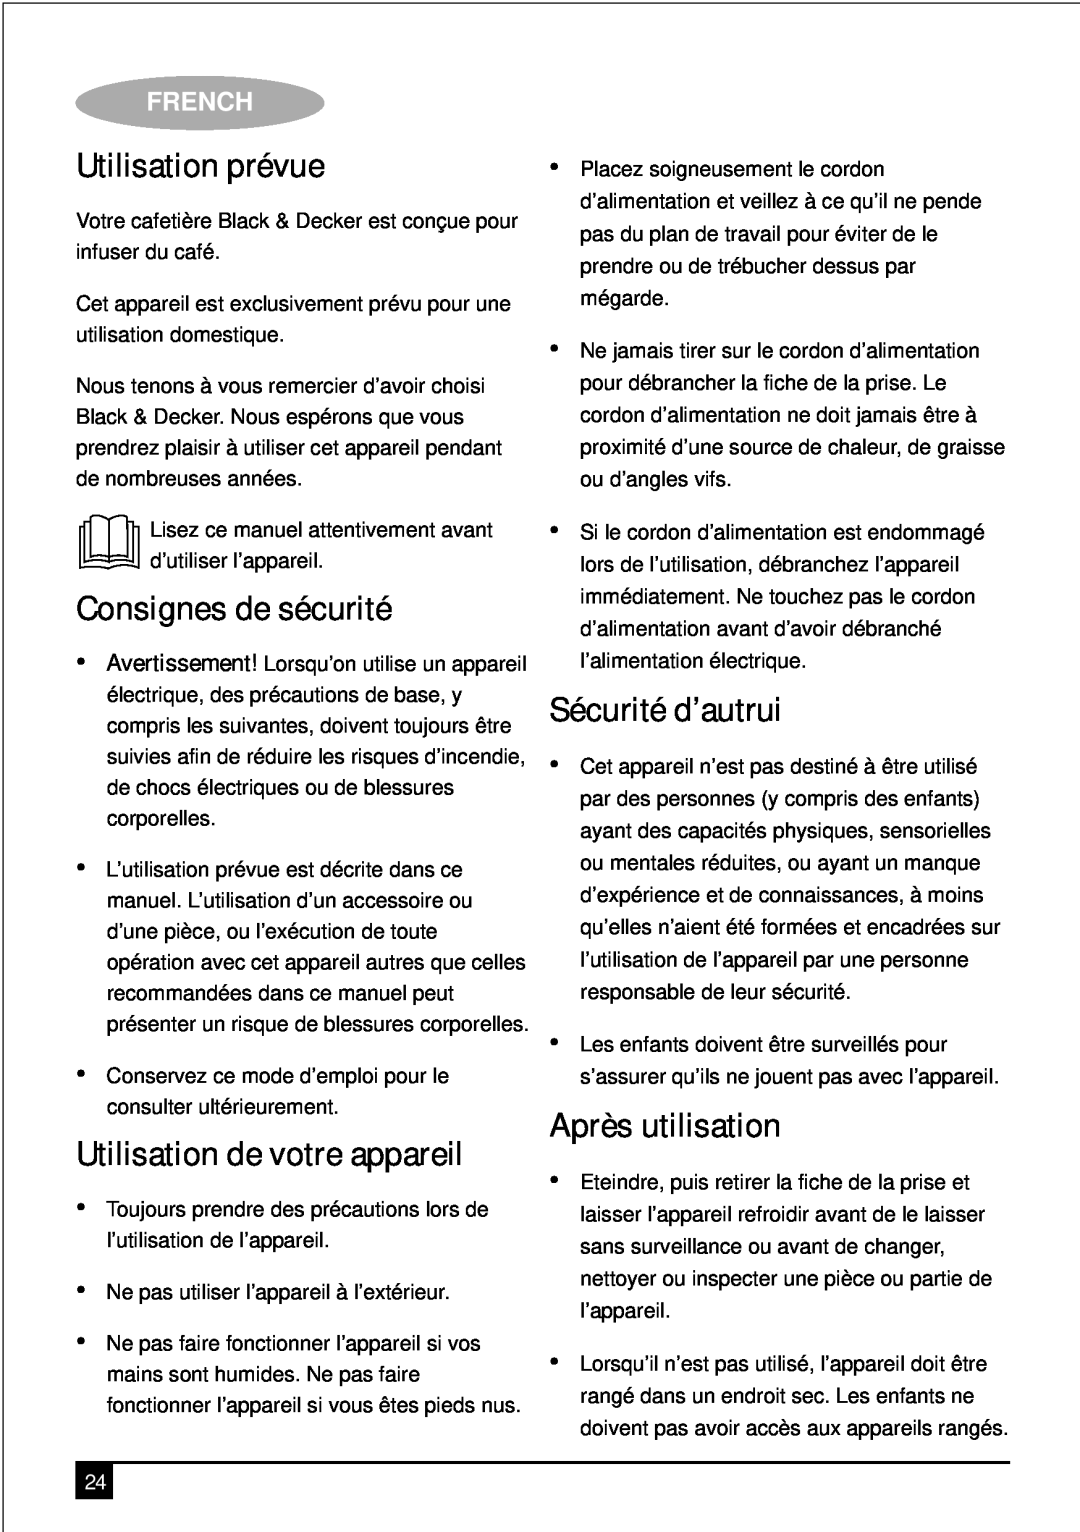 Black & Decker PRCM500 manual Utilisation prévue, Consignes de sécurité, Sécurité d’autrui, Après utilisation, French 